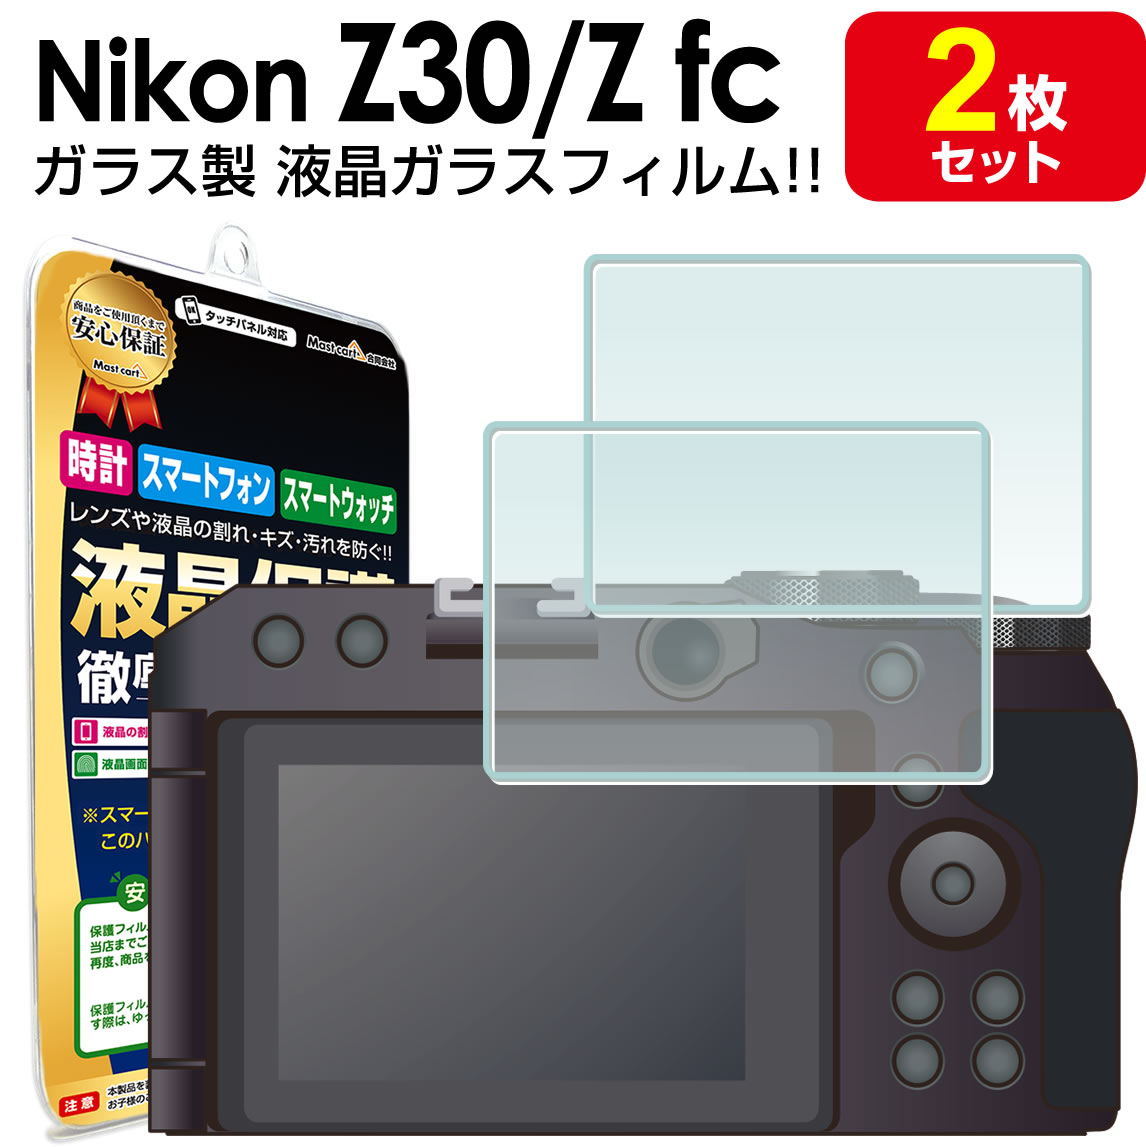 【強化ガラス 2枚セット】 nikon Z30 / 